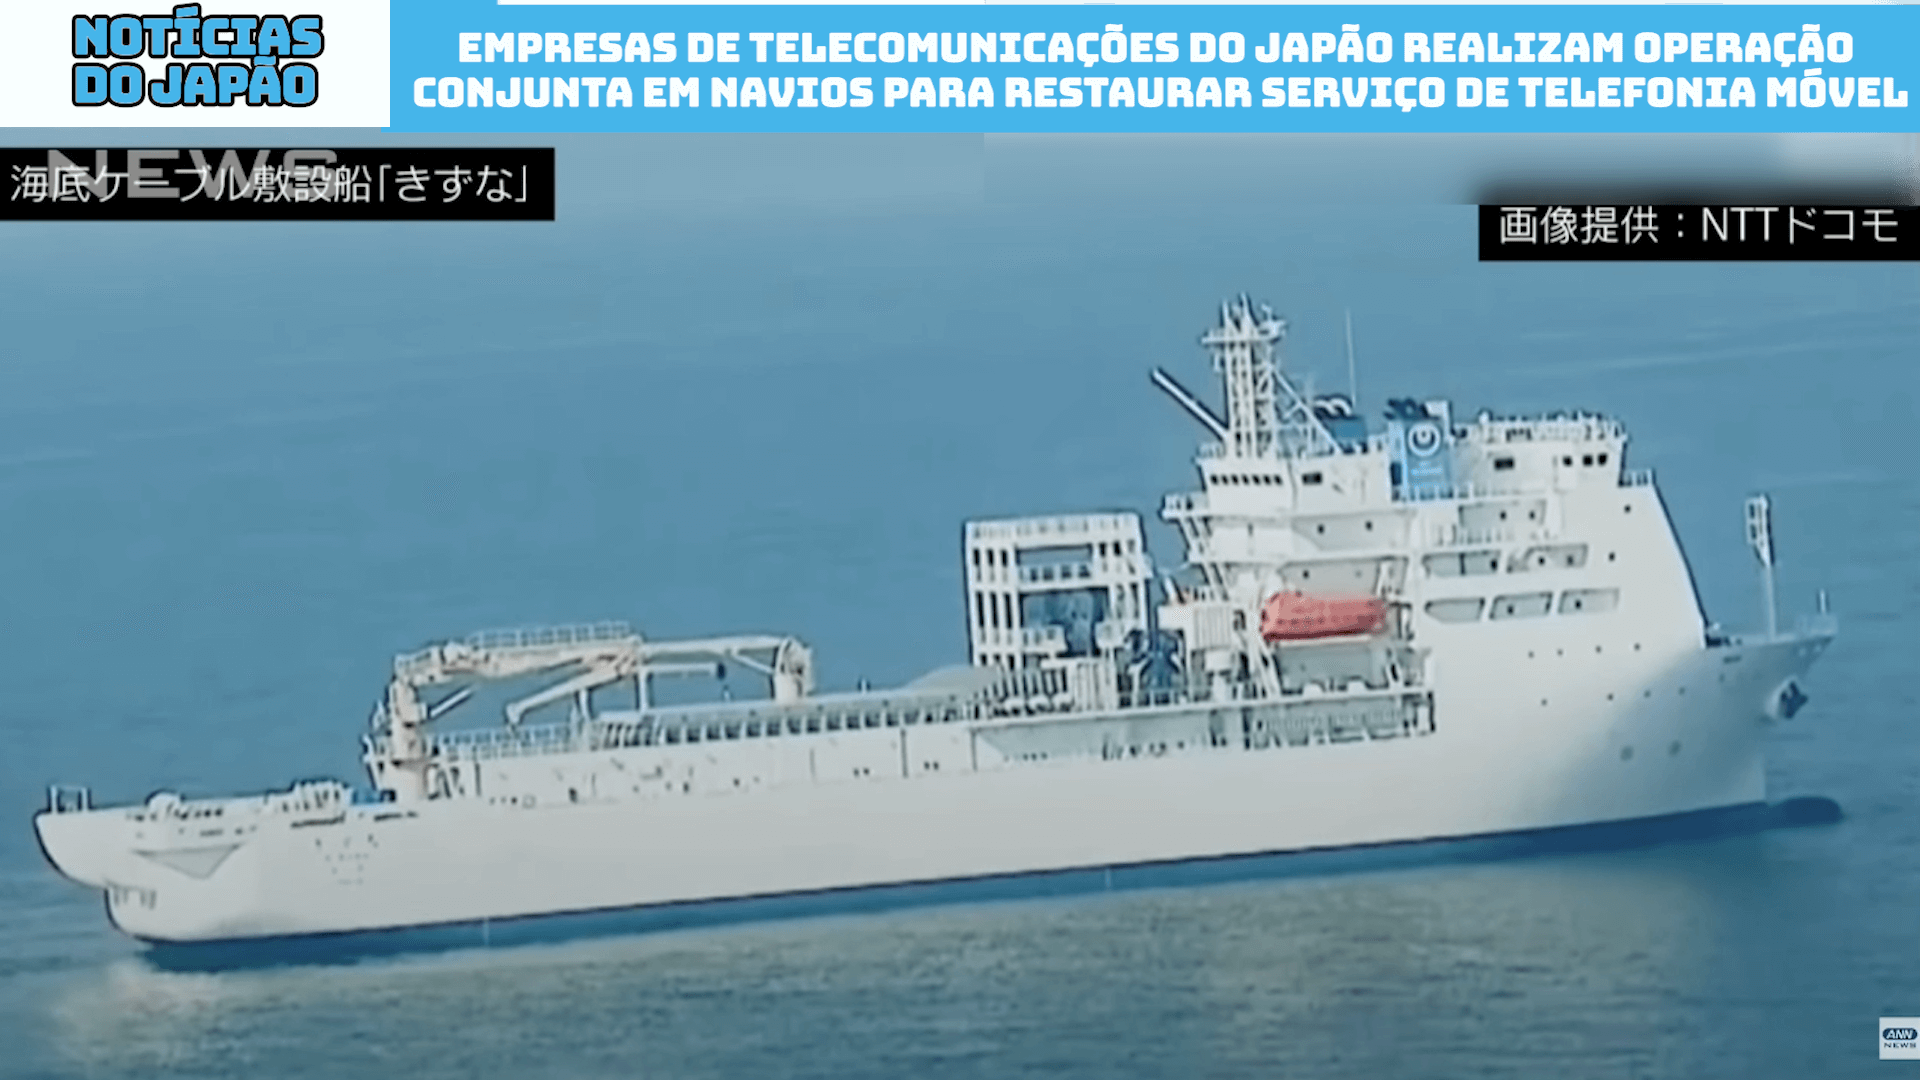 Empresas de telecomunicações do Japão realizam operação conjunta em navios para restaurar serviço de telefonia móvel